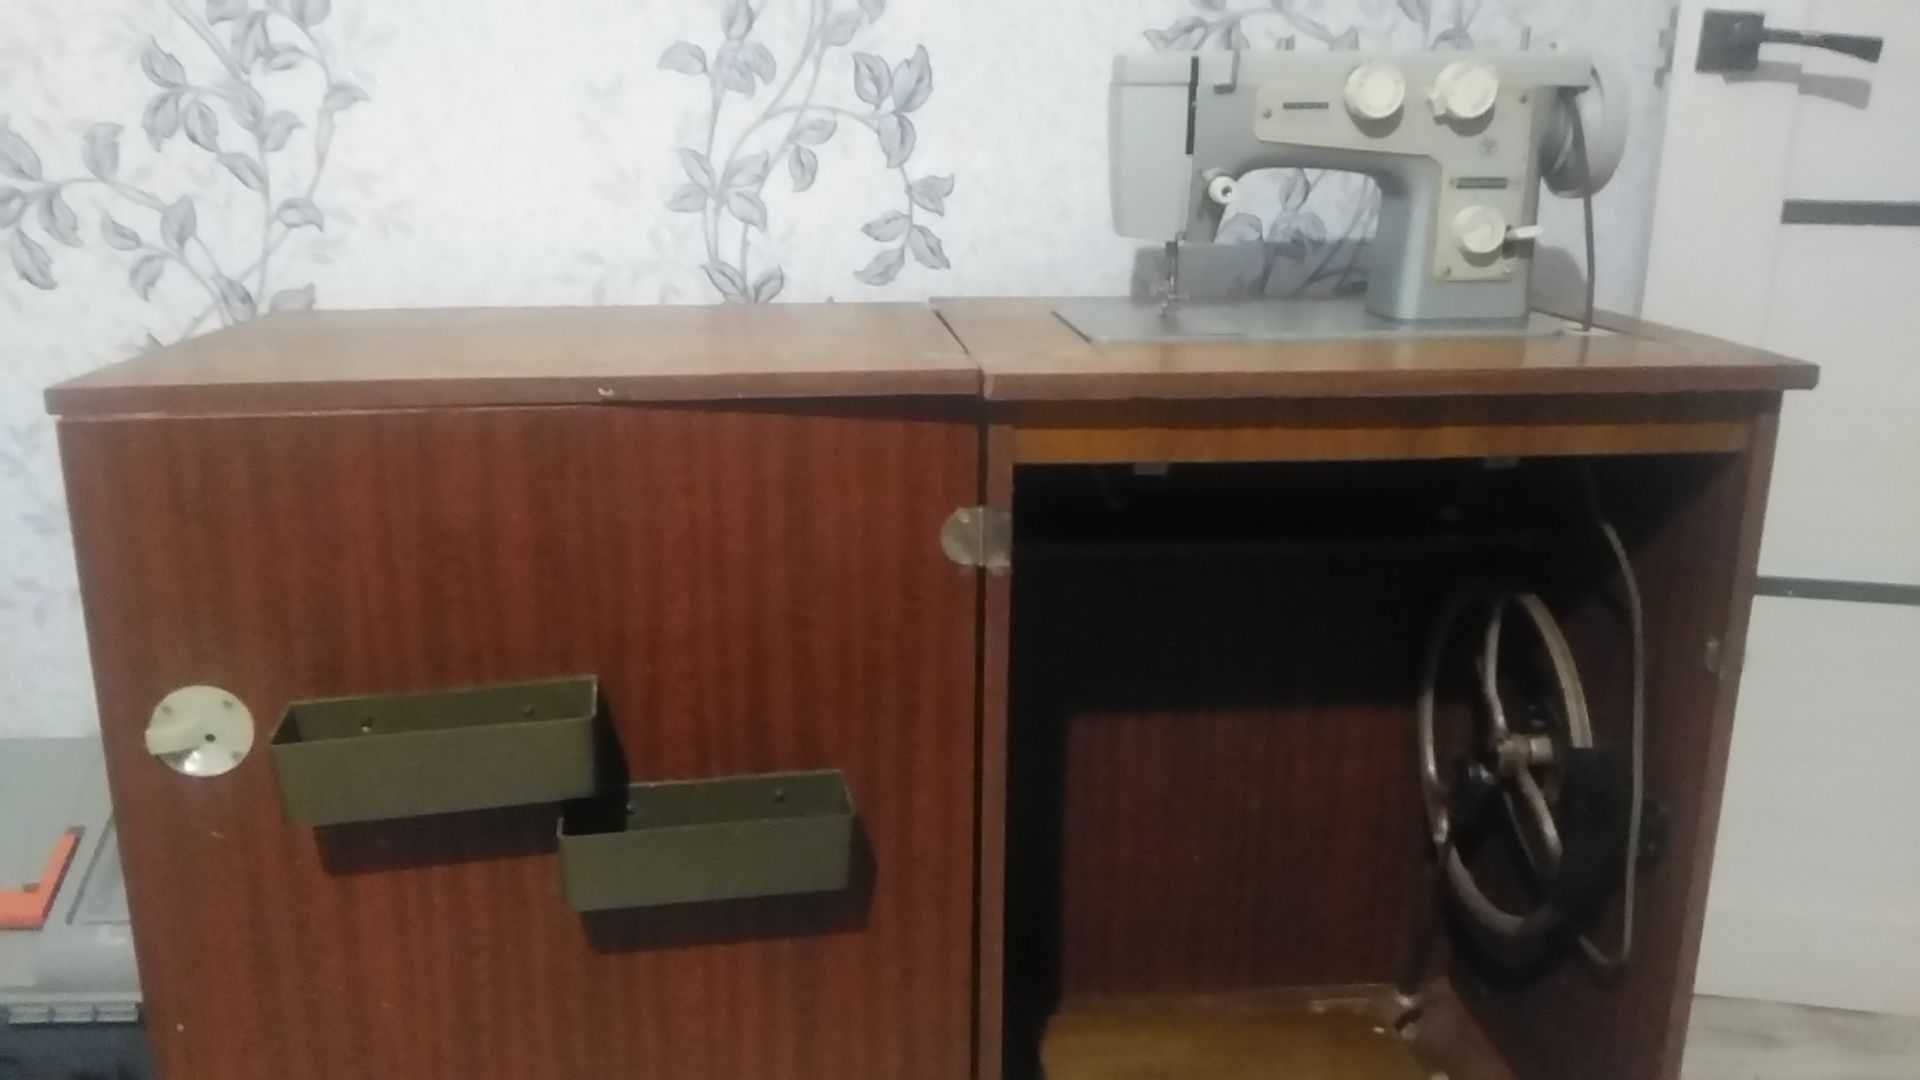 Швейную машину модель Подольск-142